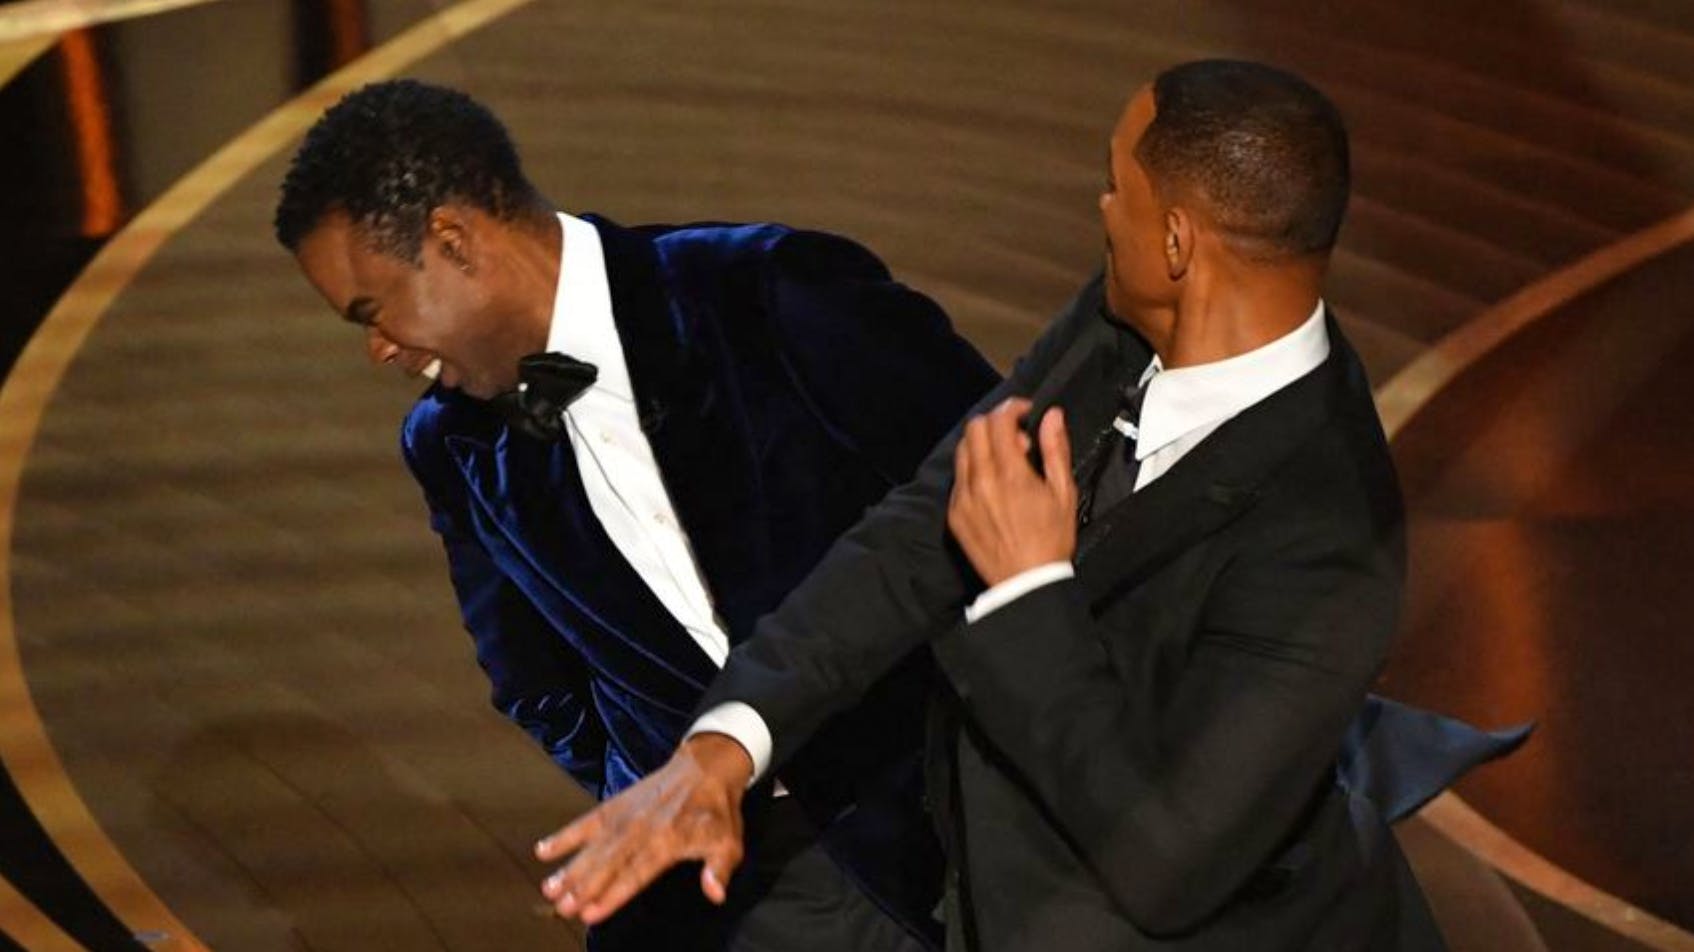 Wegen eines Witzes über seine Frau geht Will Smith auf die Bühne und schlägt Chris Rock ins Gesicht. In der Dankesrede für seinen Oscar entschuldigt er sich dafür.